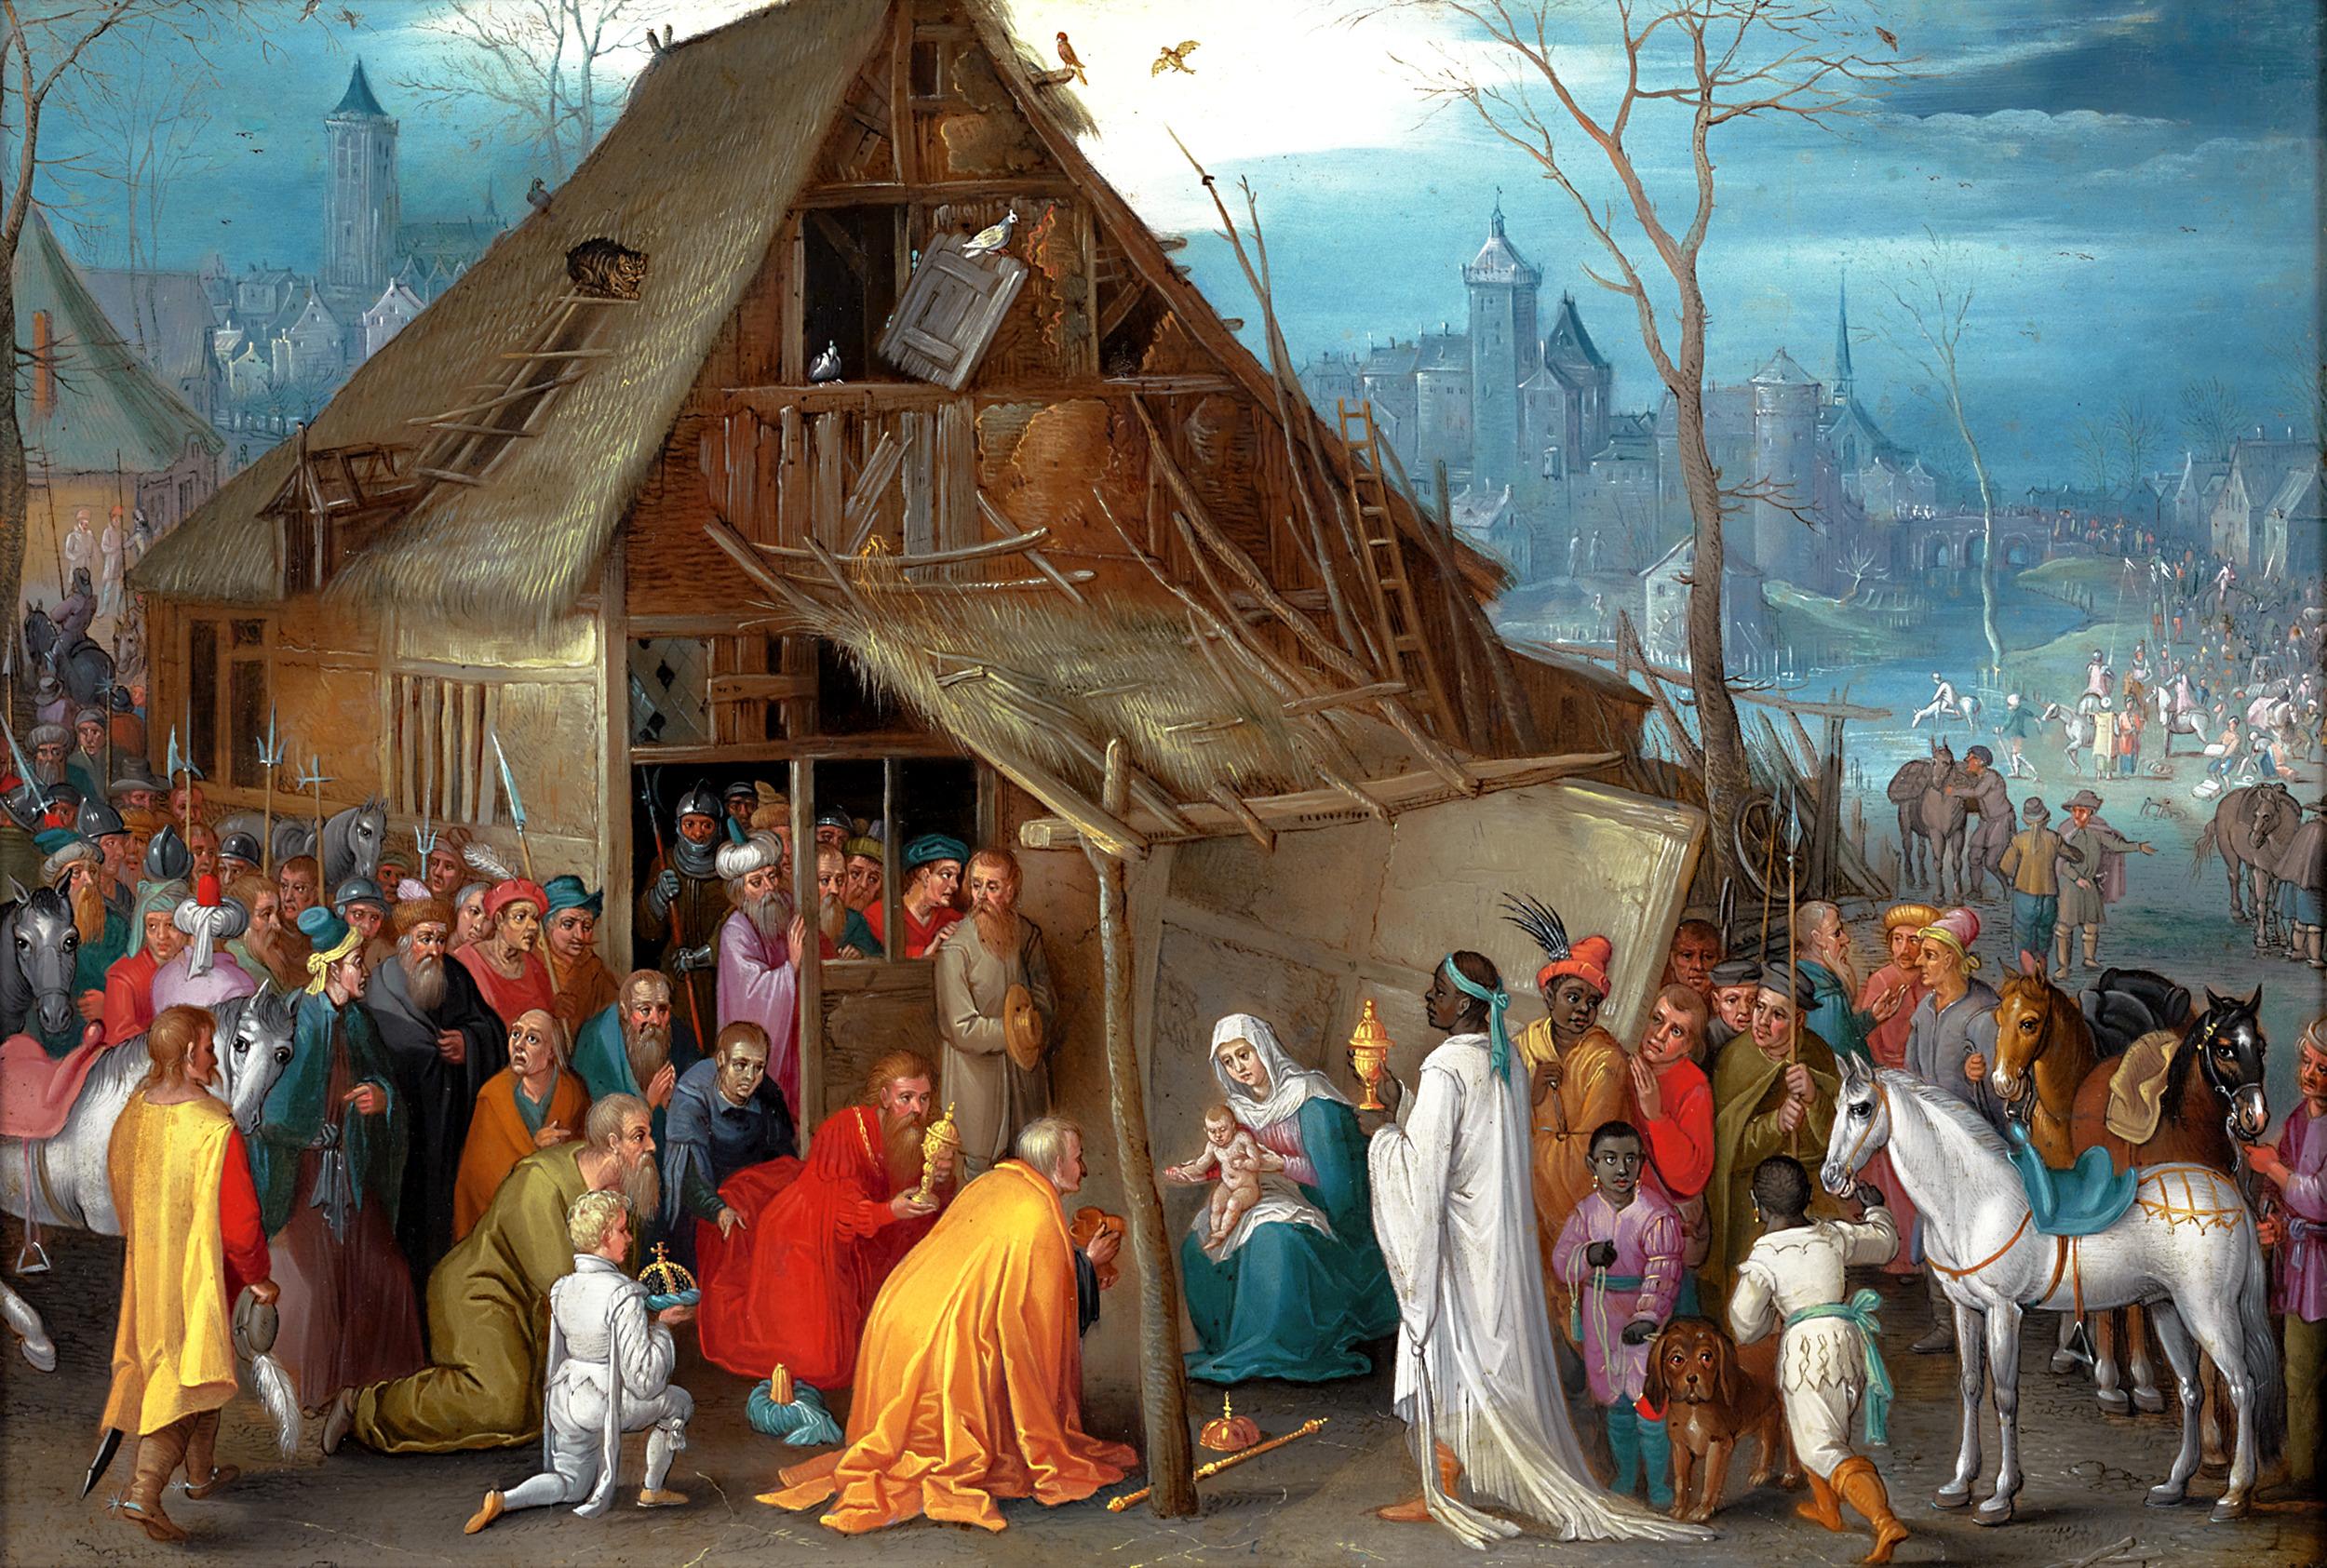 Joseph van Bredael
1688-1739  Flämisch

Die Anbetung der Heiligen Drei Könige

Öl auf Kupfer

Dieses außergewöhnliche Gemälde, das auf Kupfer gemalt wurde und eine exquisite Leuchtkraft aufweist, wurde von dem famosen flämischen Künstler Joseph van